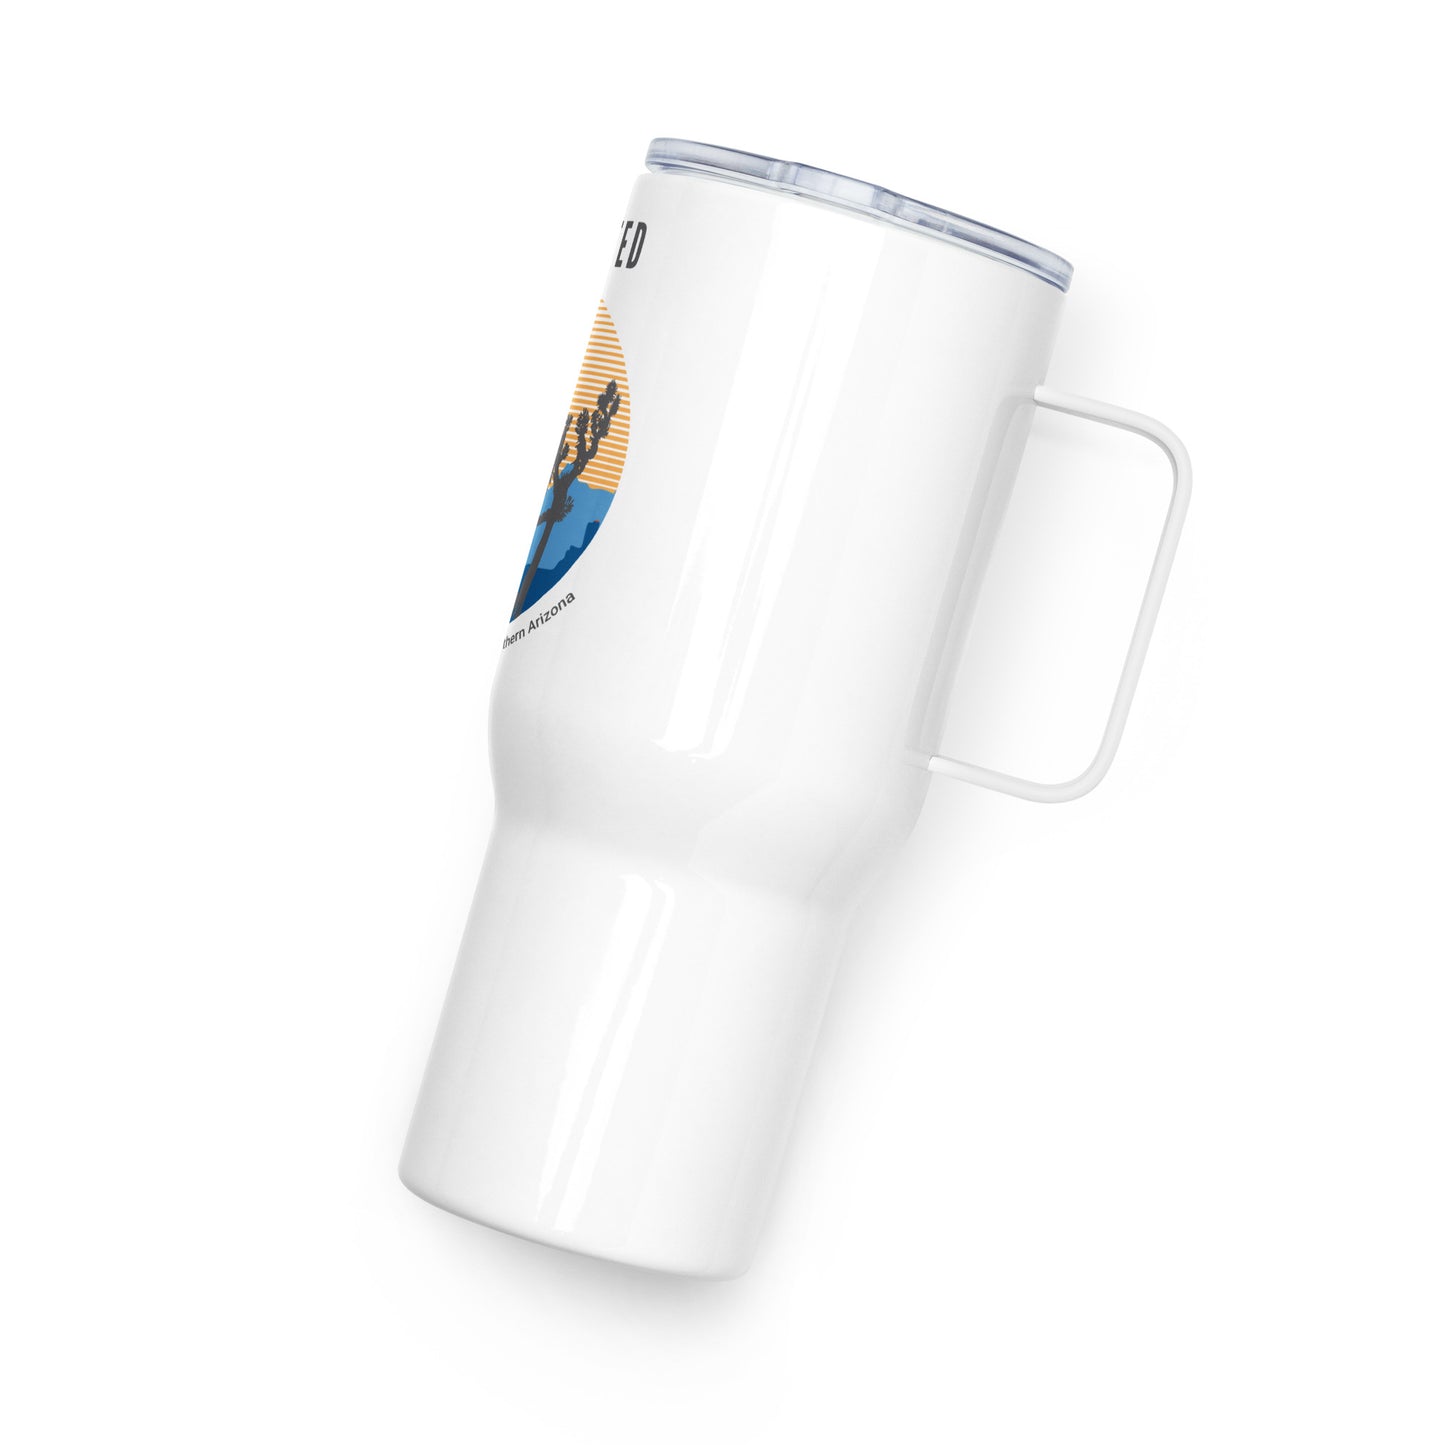 Tucson United Sunset Travel mug with a handle